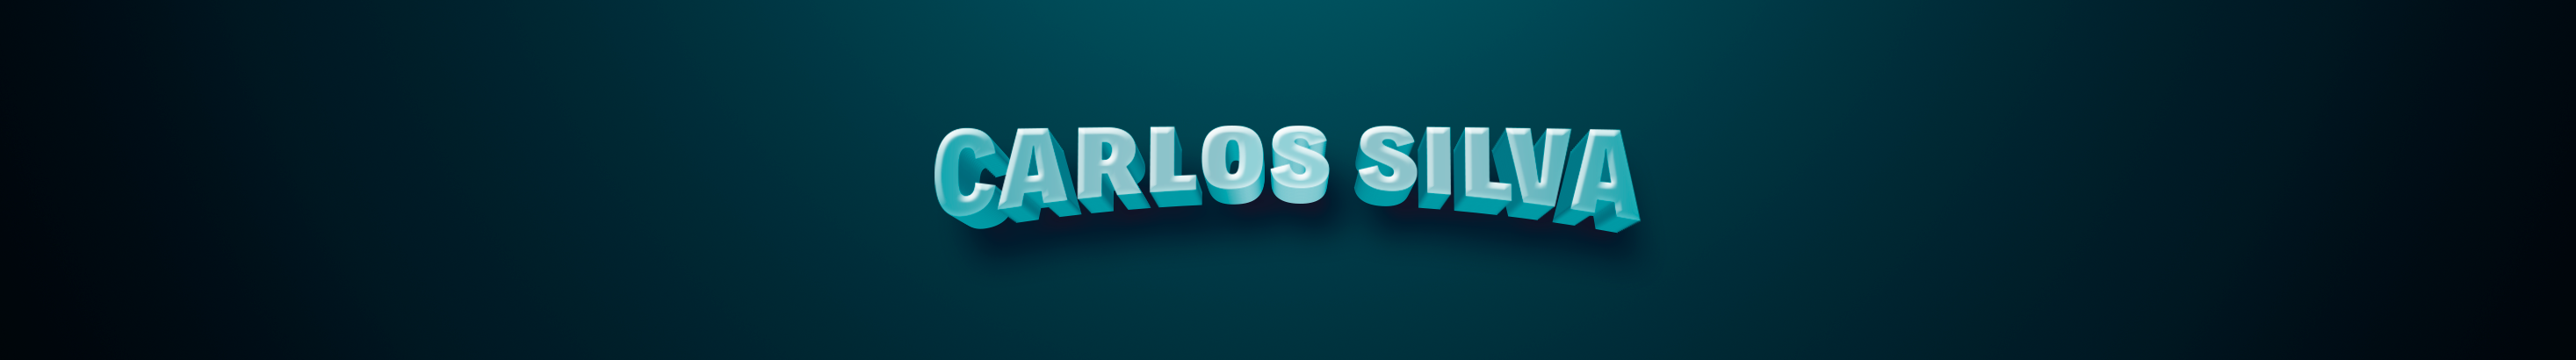 Carlos Silva's profile banner